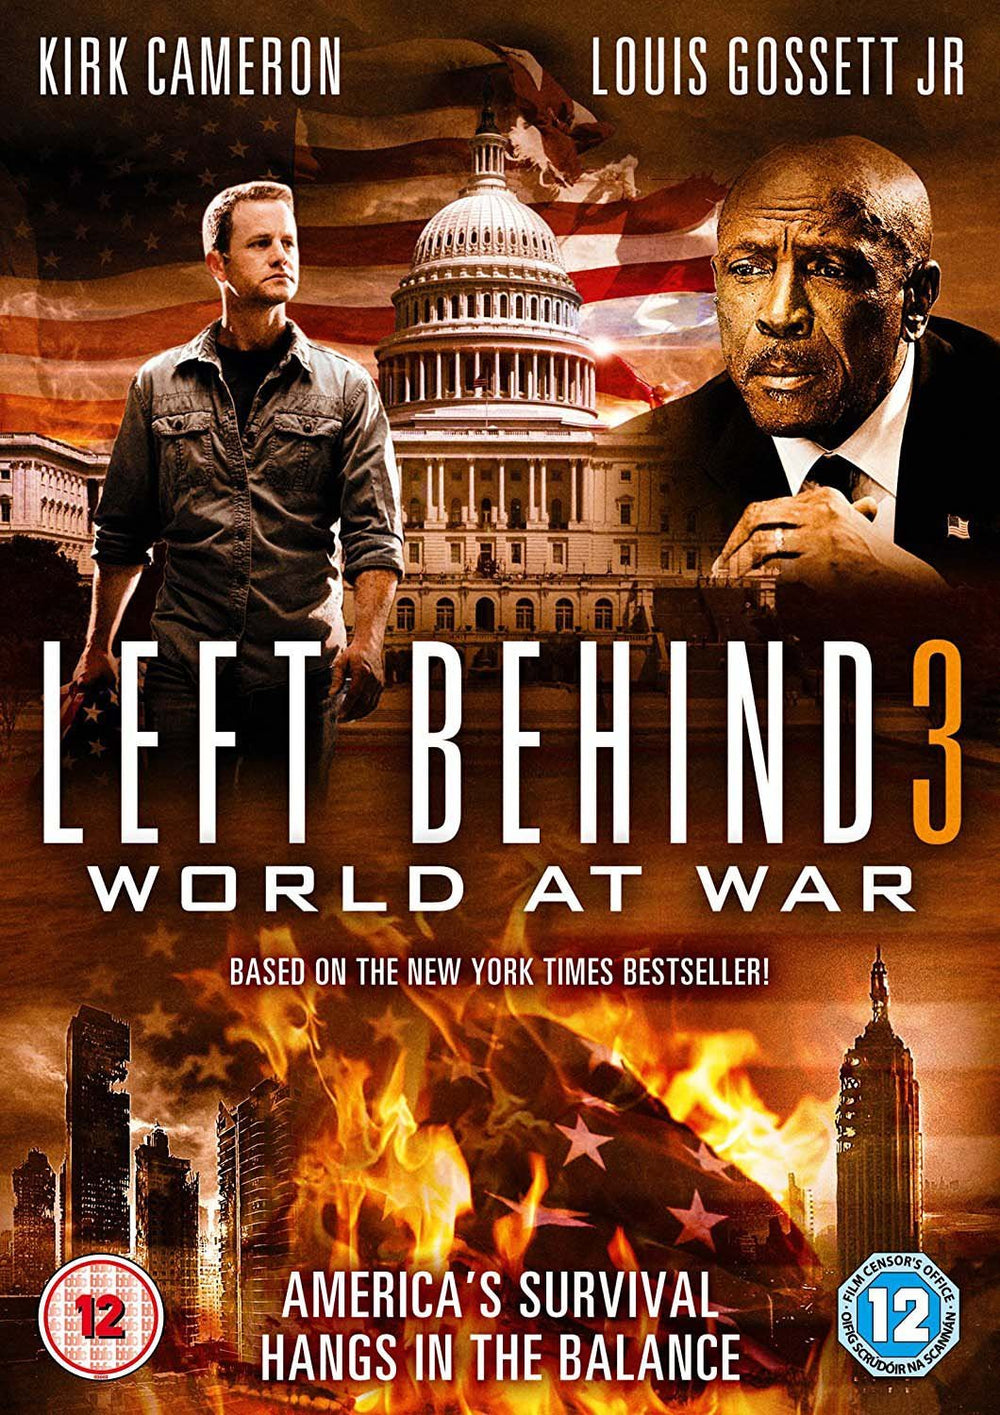 Left behind 3 (DVD)